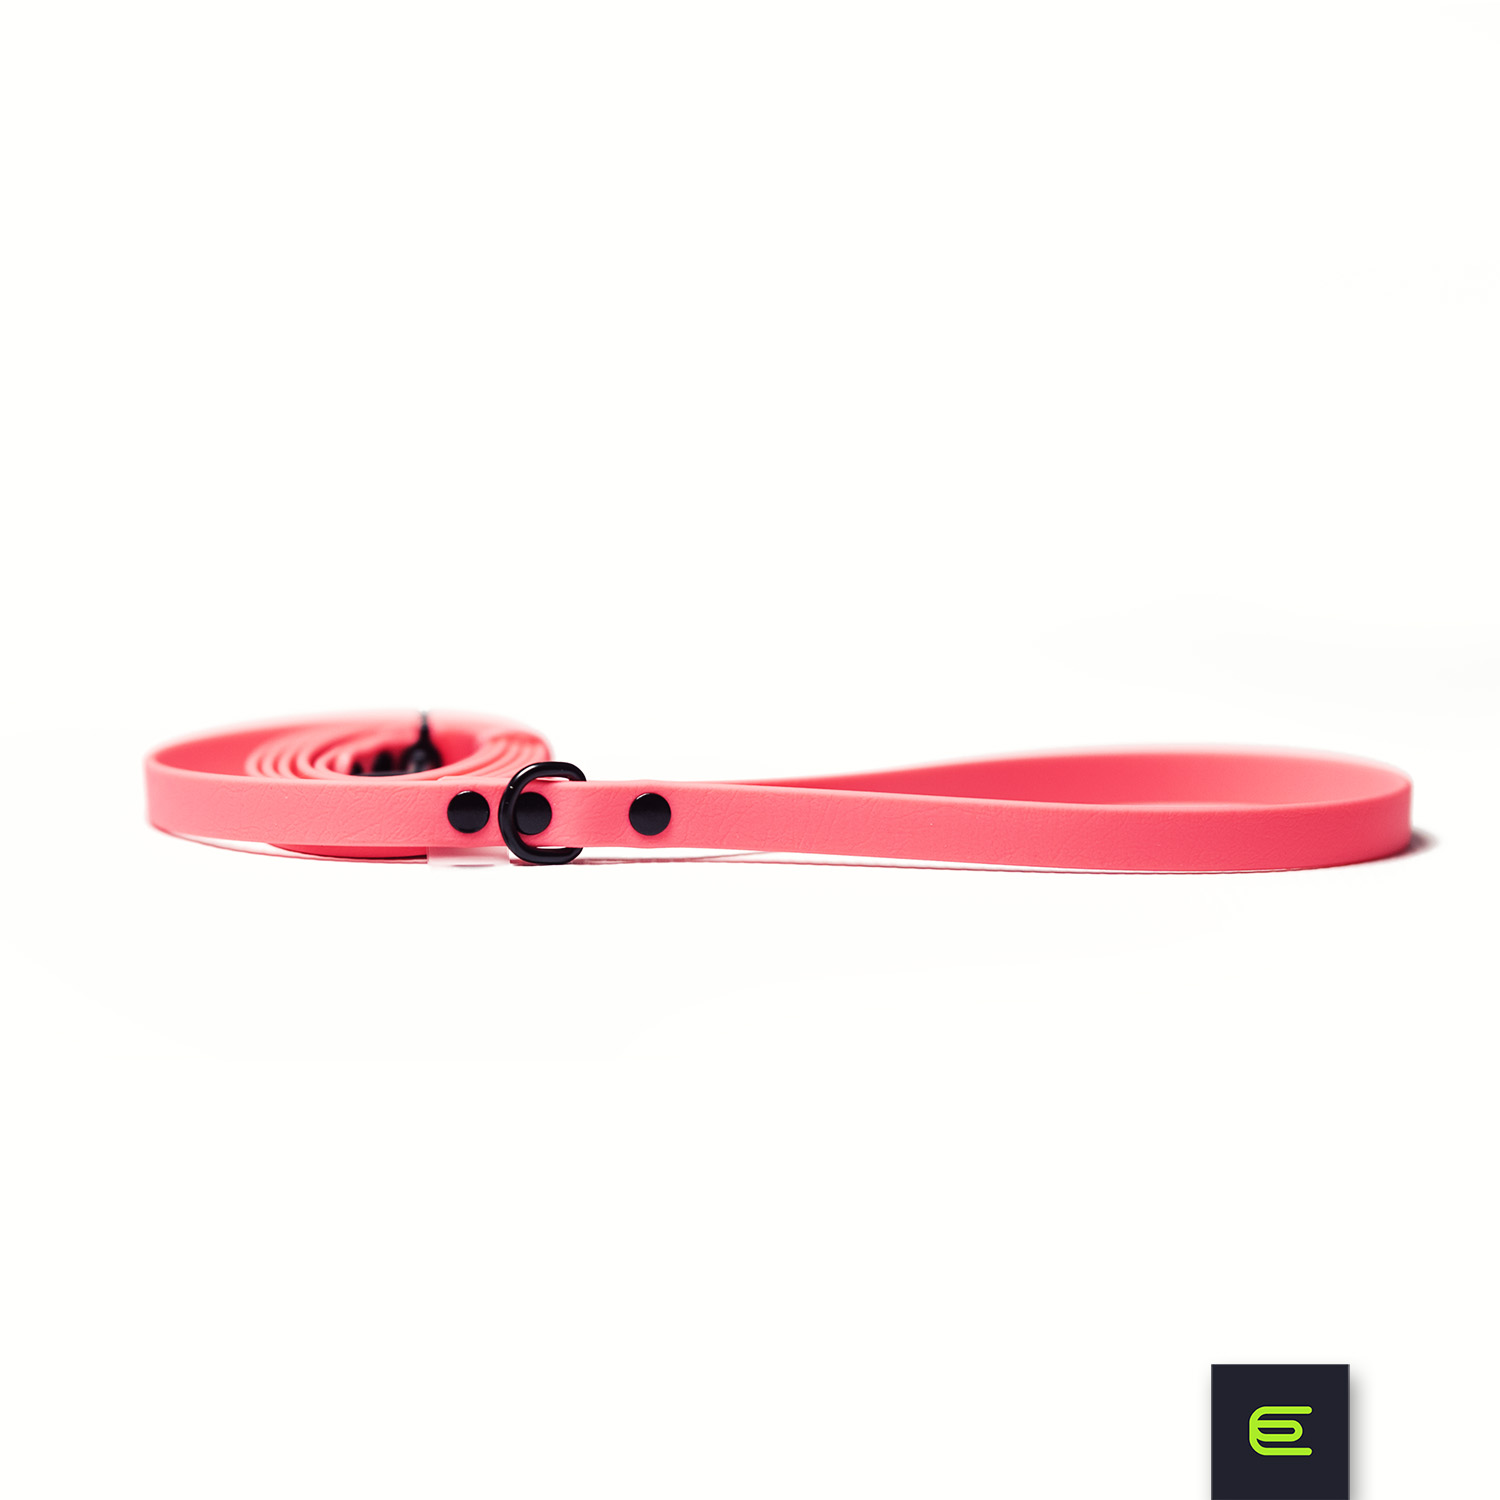 Smycz dla charcika włoskiego Neon Pink BioThane® - EYESH -for dog walks- zdjęcie 1